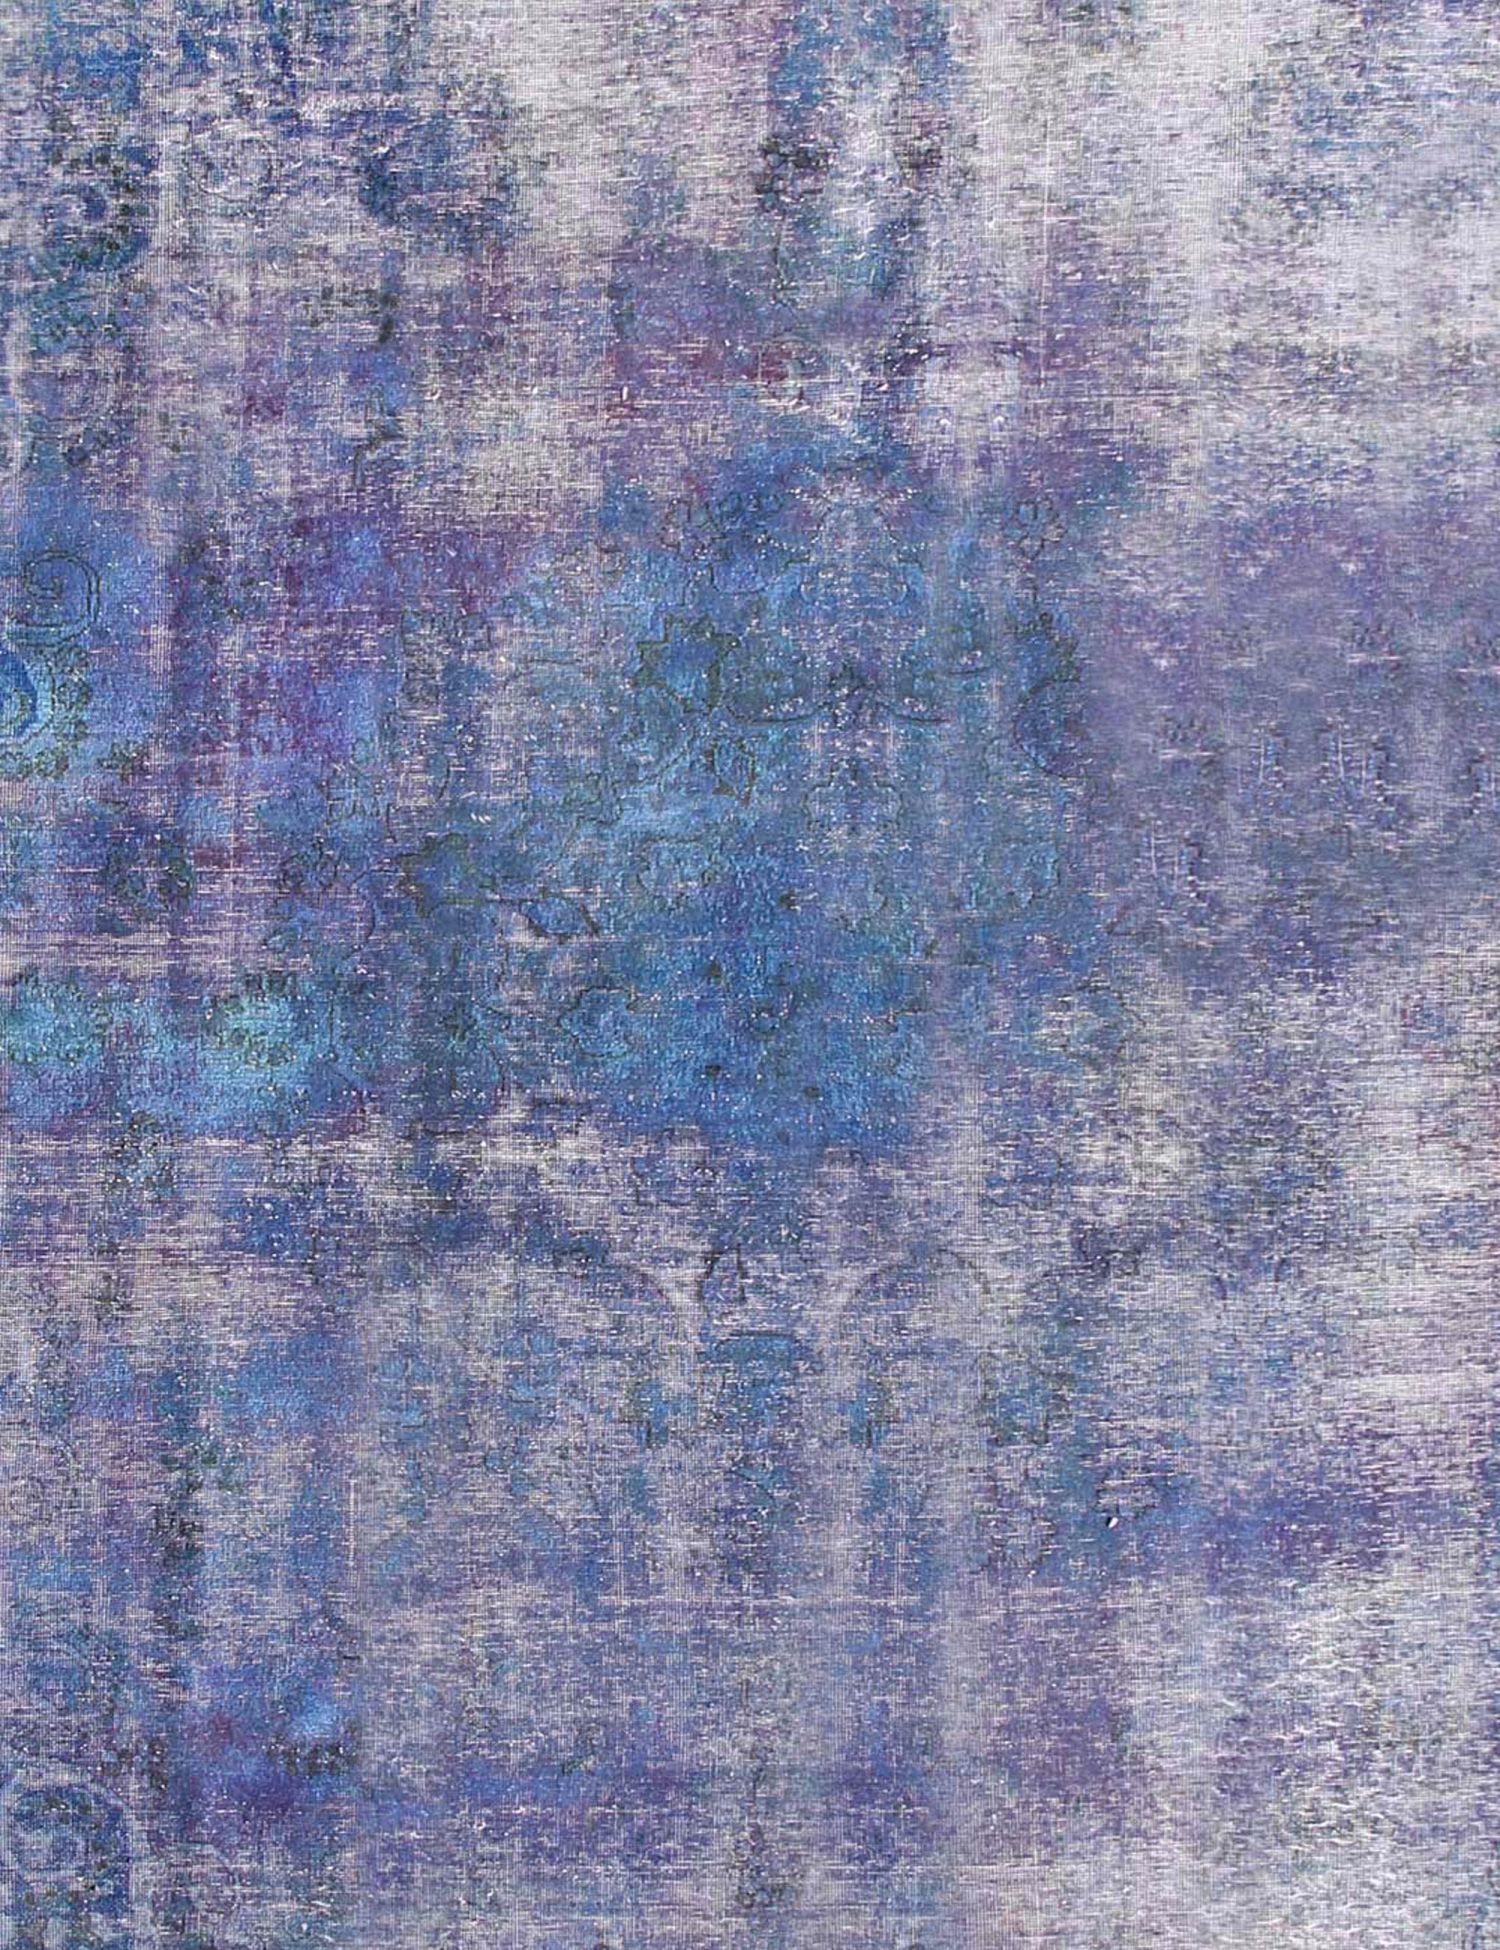 Persischer Vintage Teppich  blau <br/>260 x 260 cm